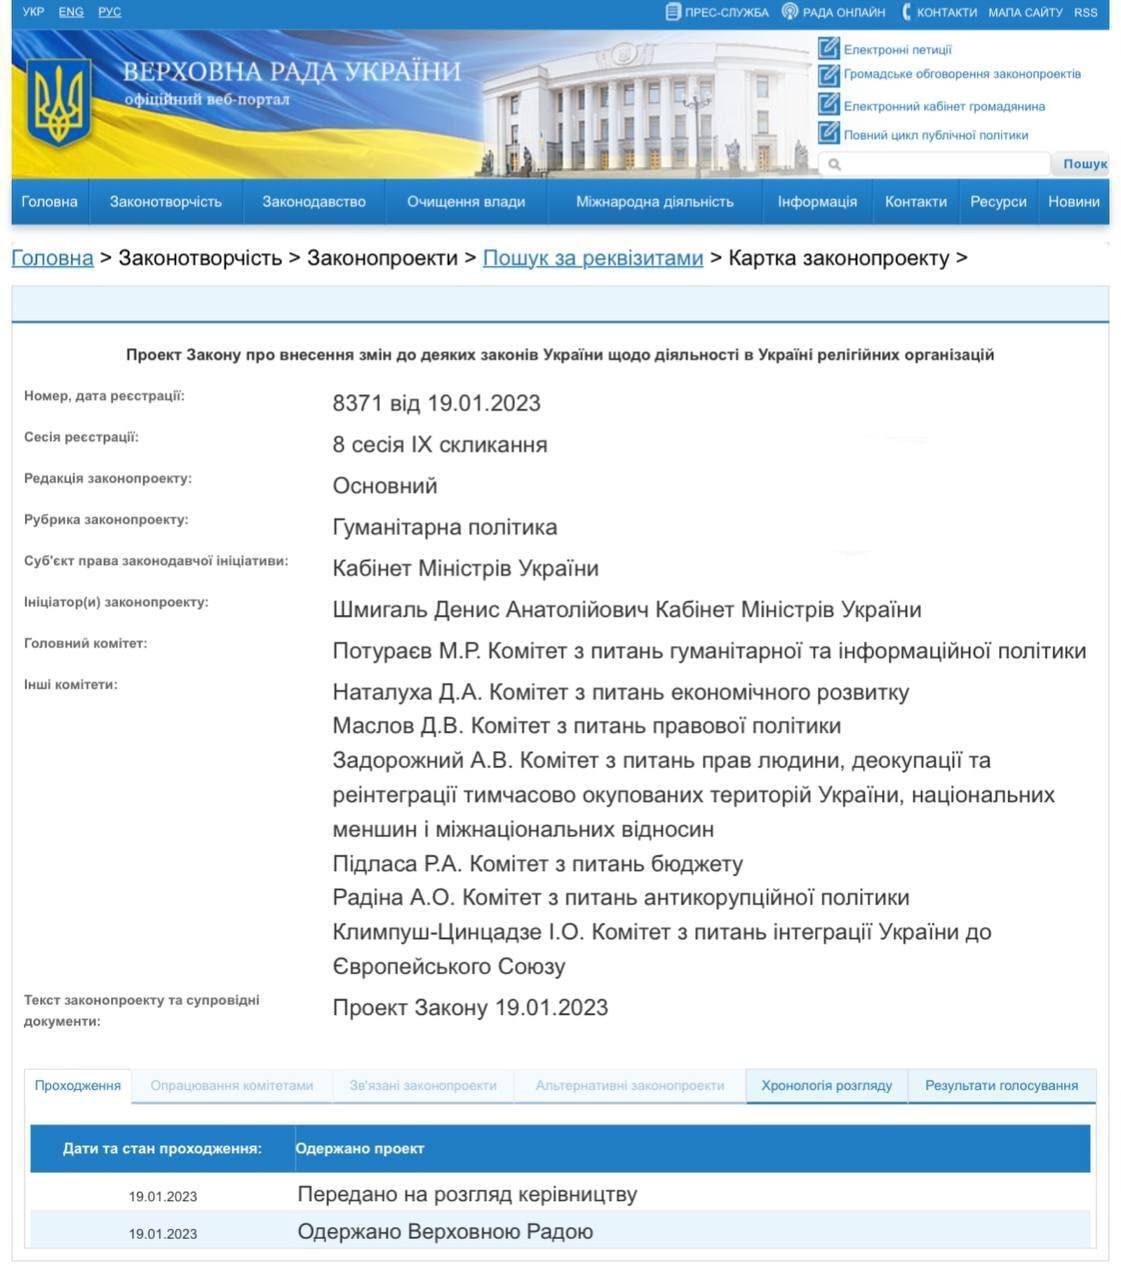 Правительство внесло в Раду законопроект о запрете деятельности в Украине религиозных организаций, которыми руководят из РФ